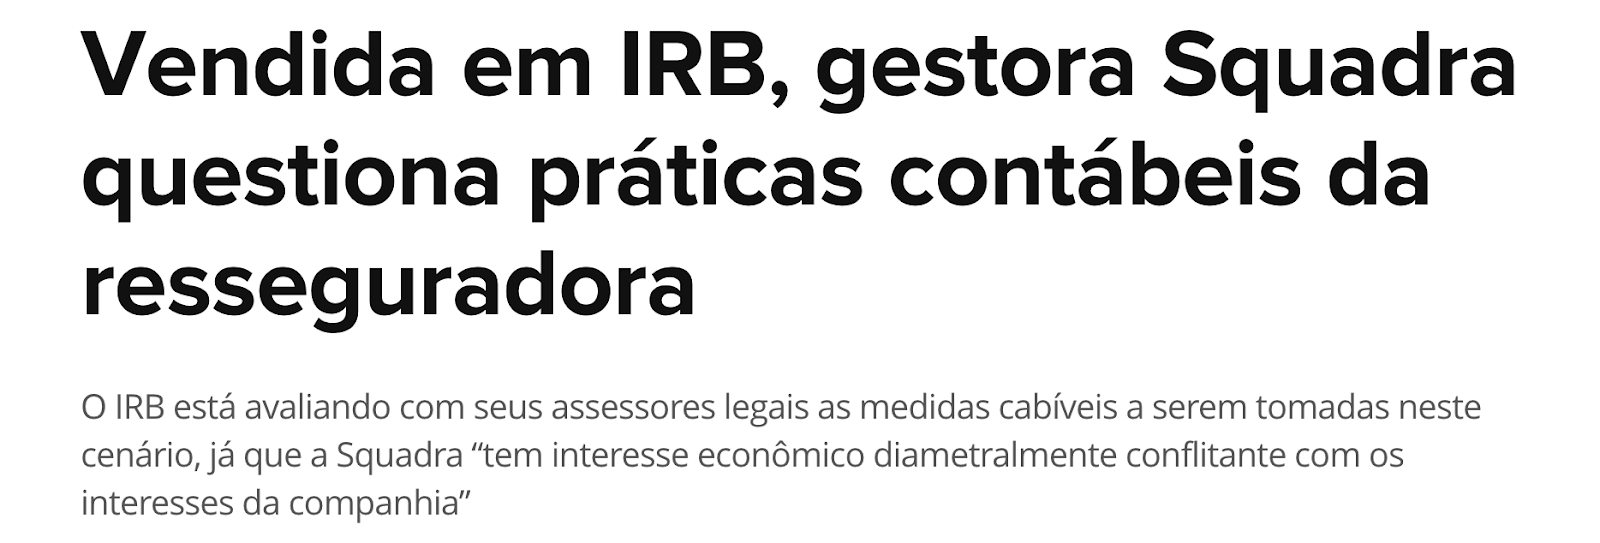 Manchete do Valor Econômico: "Vendida em IRB, gestora Squadra questiona práticas contábeis da resseguradora"